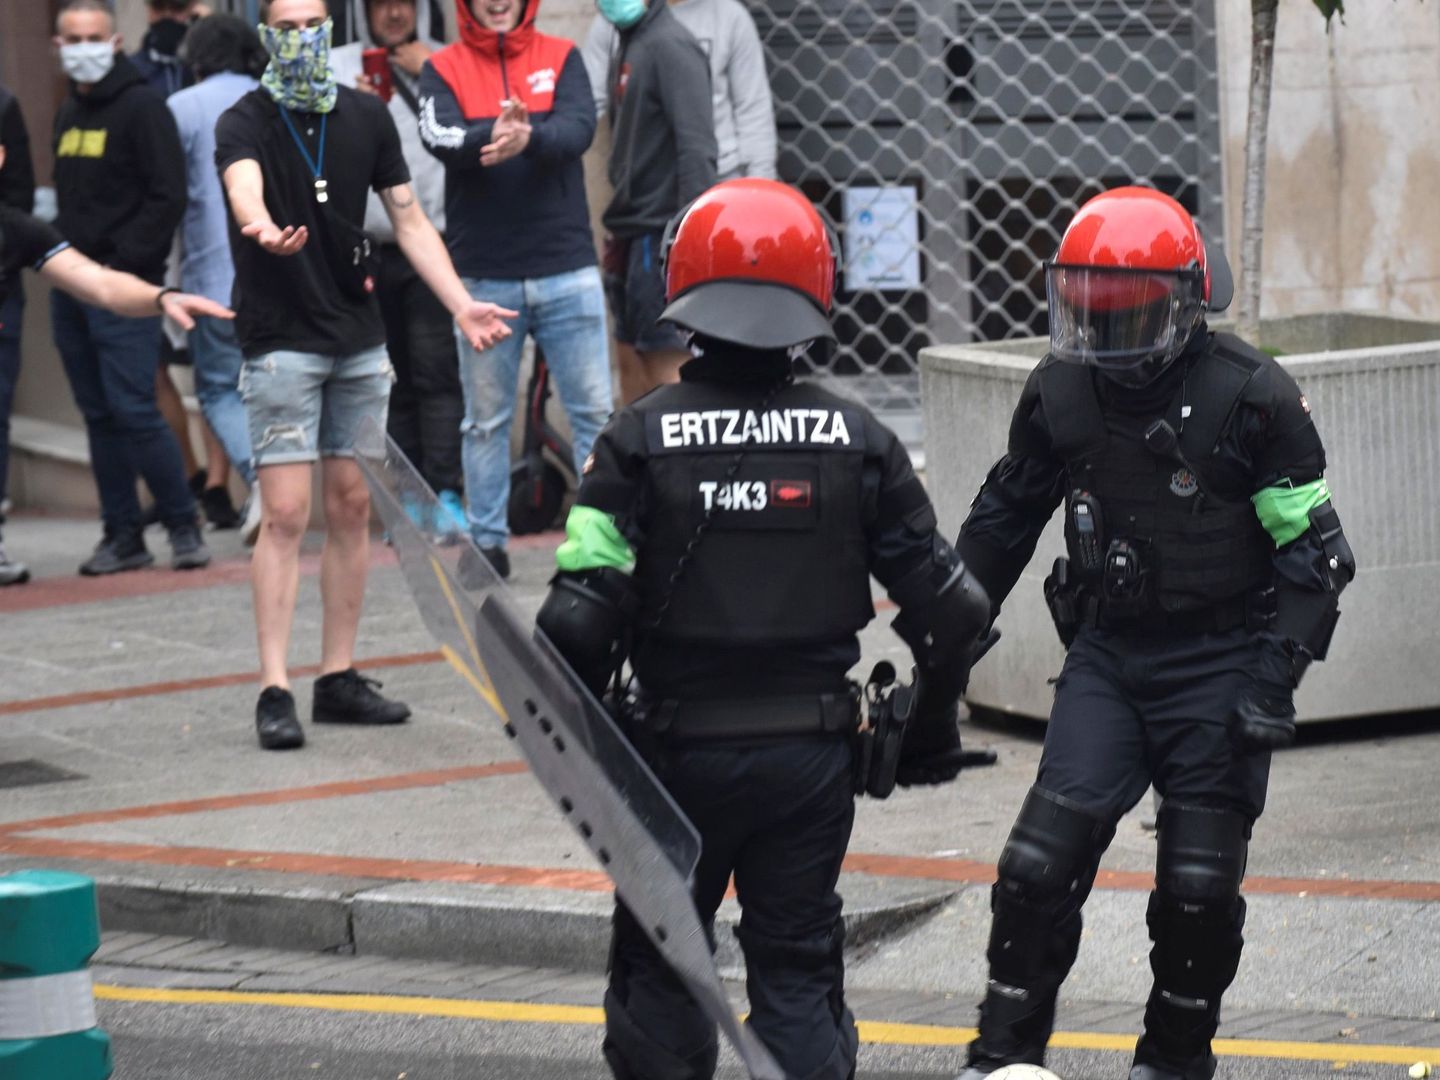 Dos agentes de la Ertzaintza apartan un balón y separan a los grupos radicales del mitin del partido. (EFE)